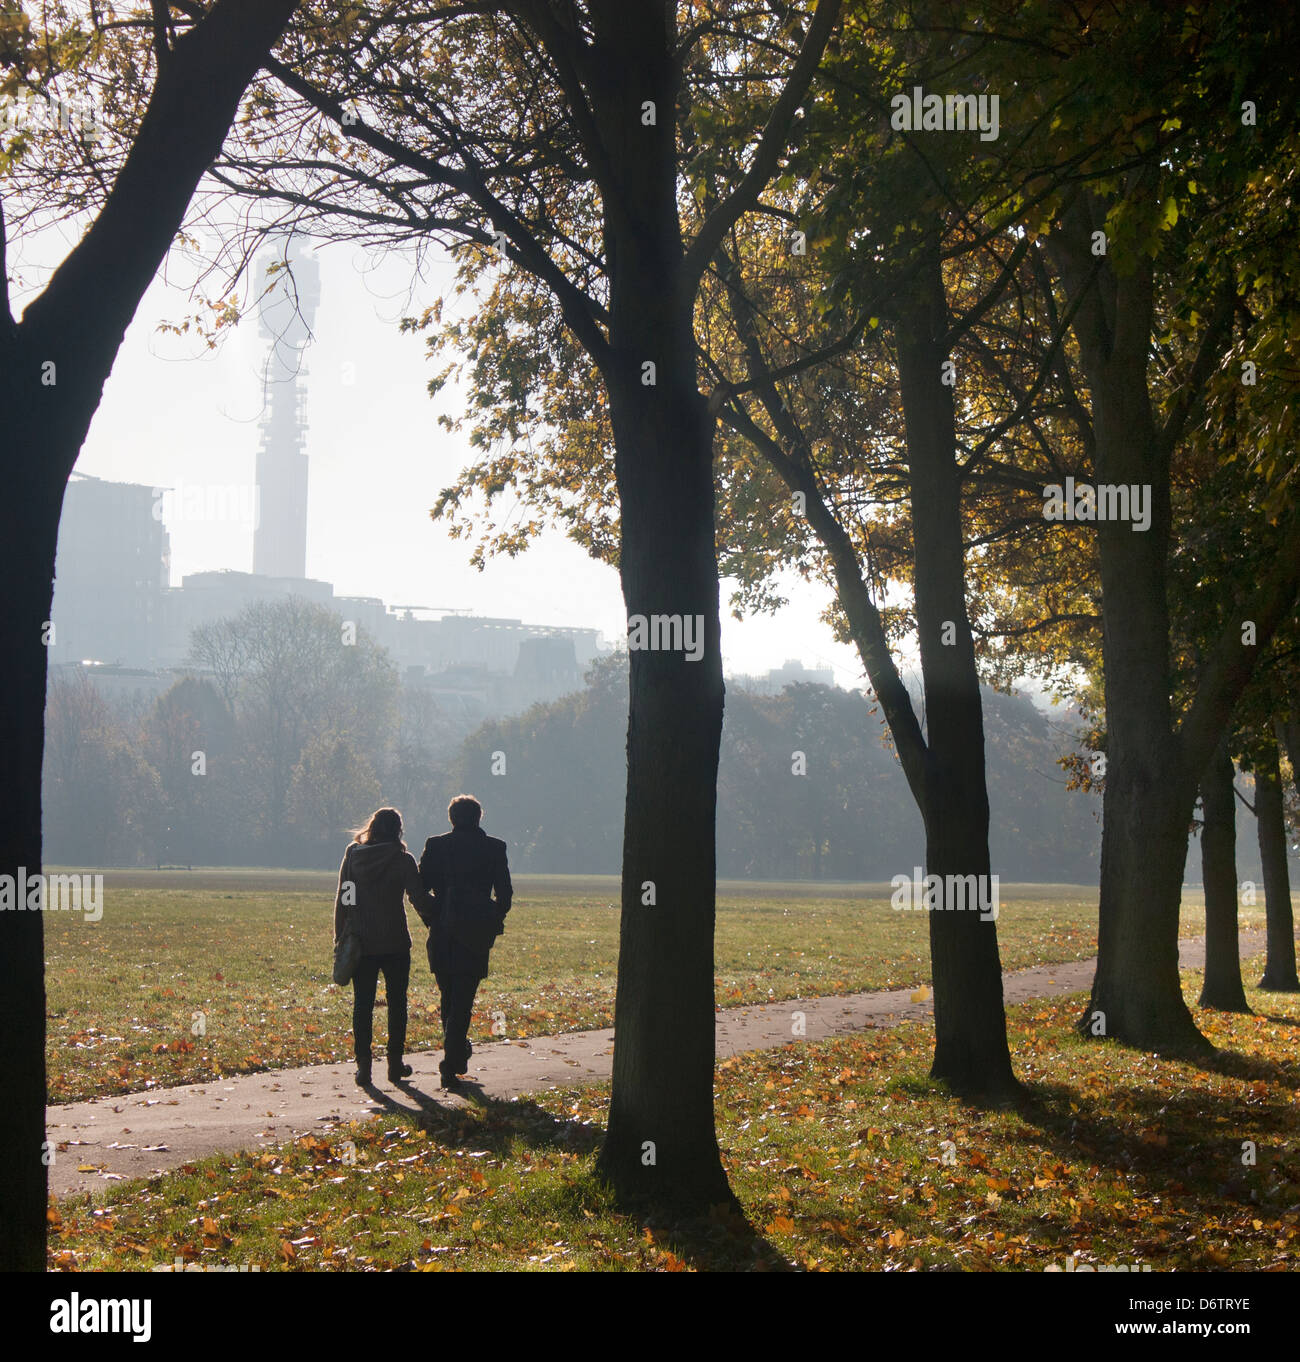 Couple walking through The Regent's Park au début de l'automne matin avec BT Tower en silhouette dans Londres Angleterre Royaume-uni distance Banque D'Images